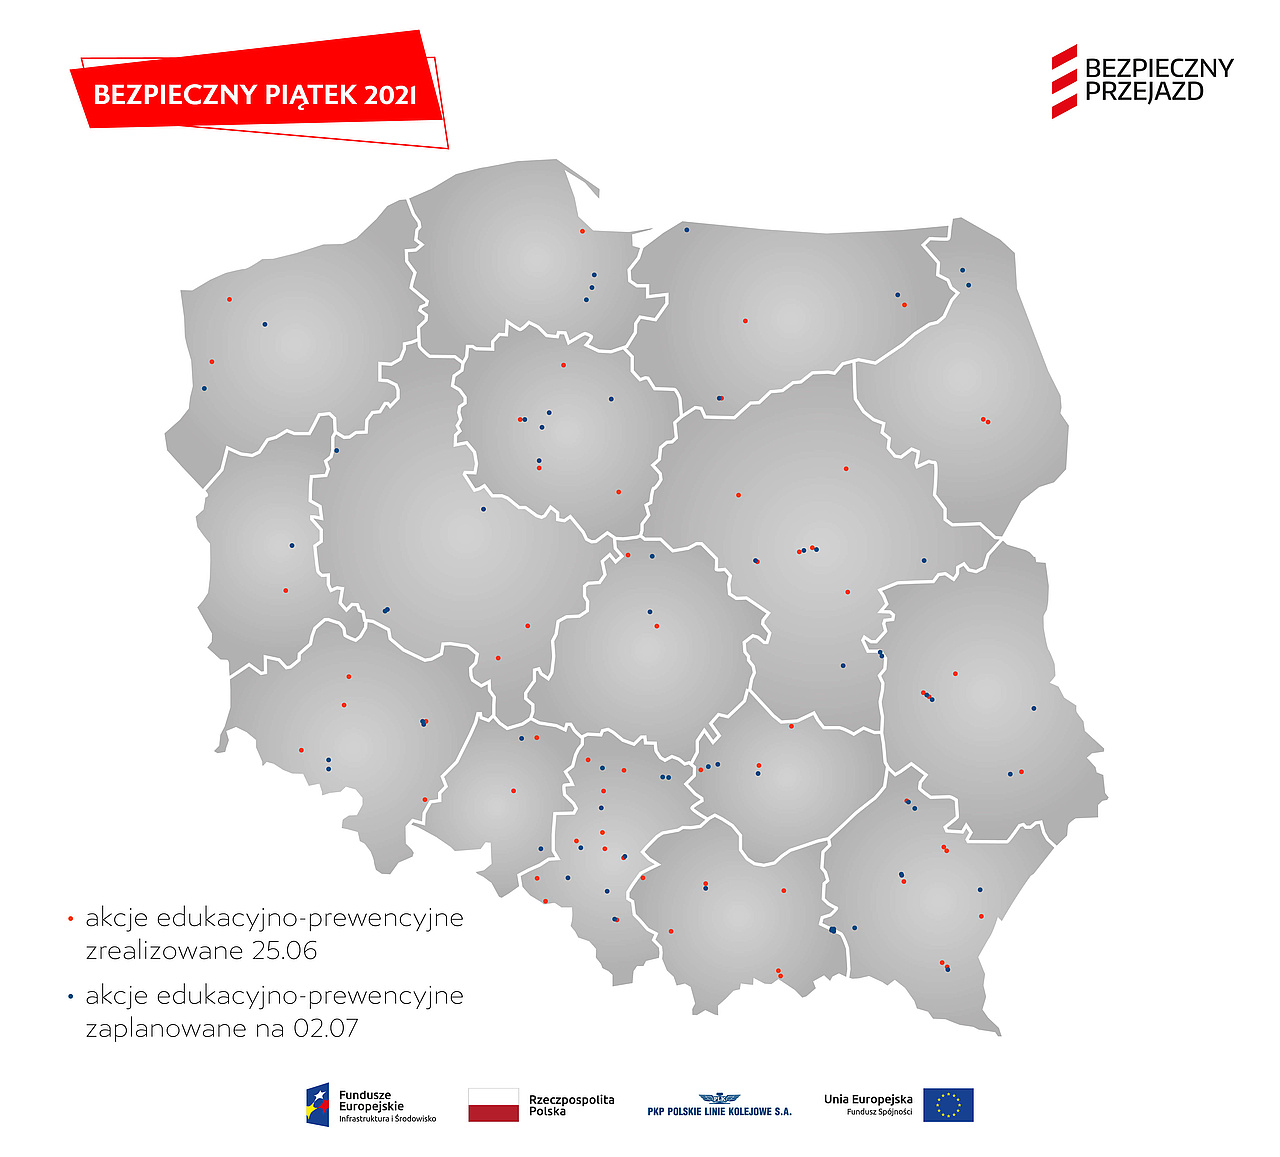 Inforafika, mapa polski z zaznaczonymi miejscami akcji informacyjnych